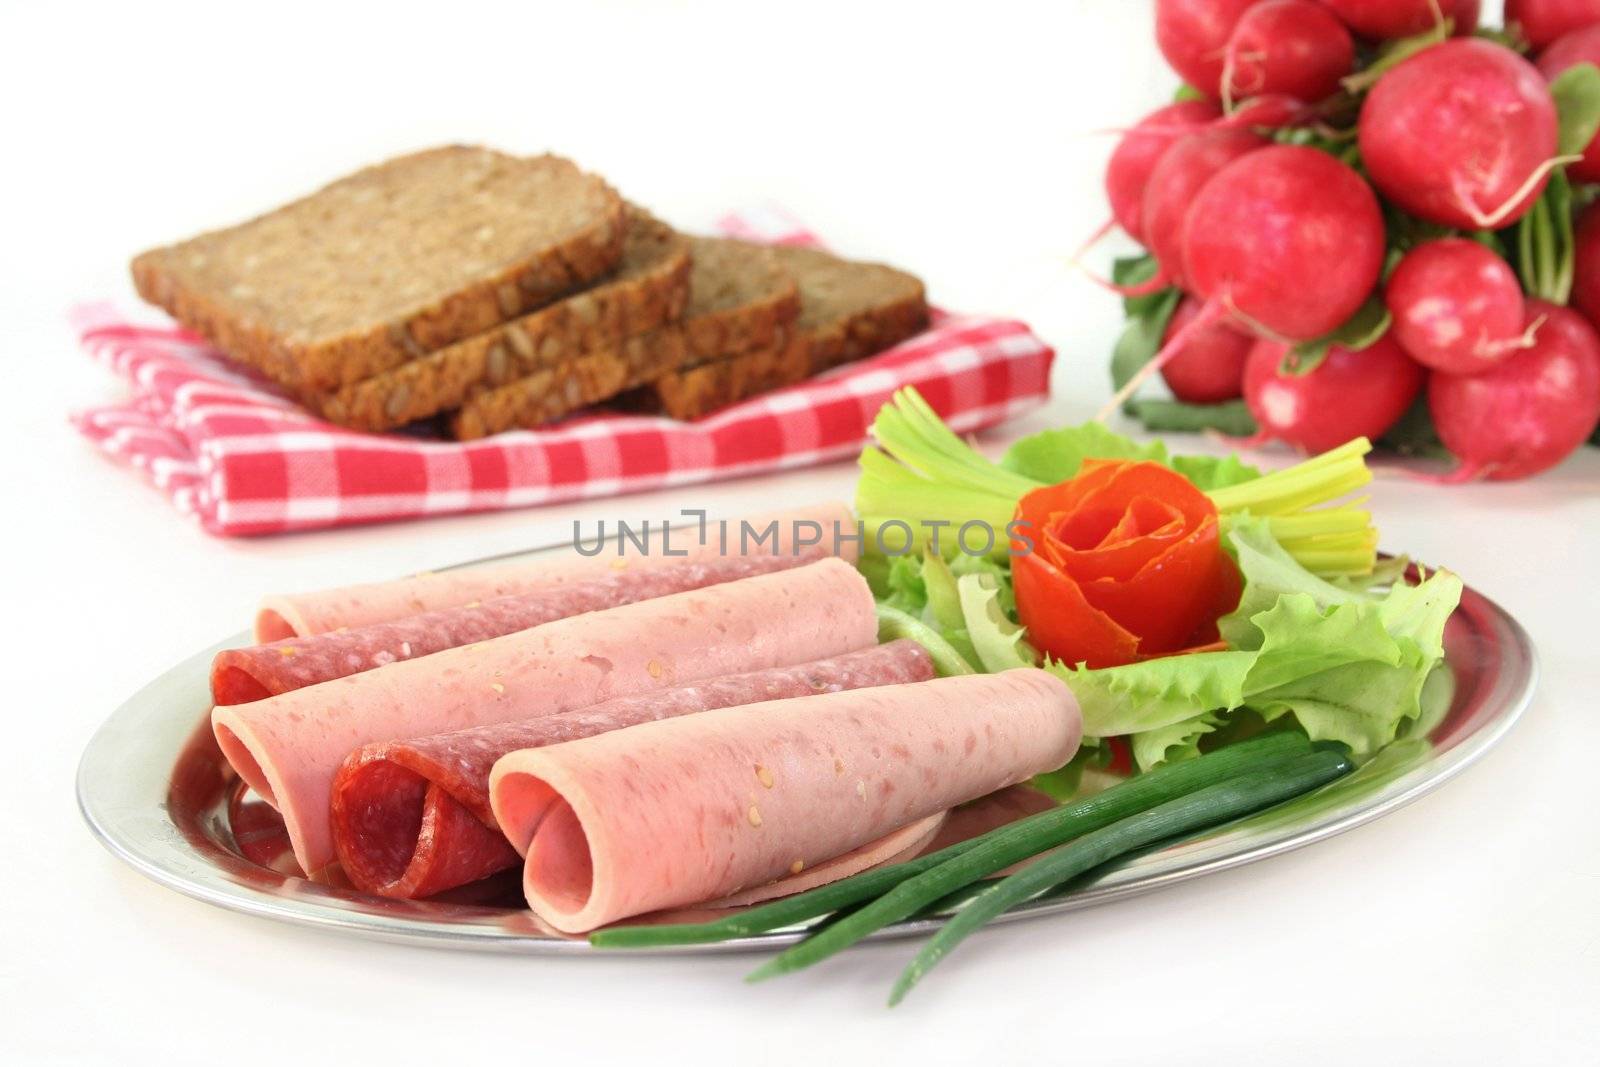 Sausage Platter by silencefoto